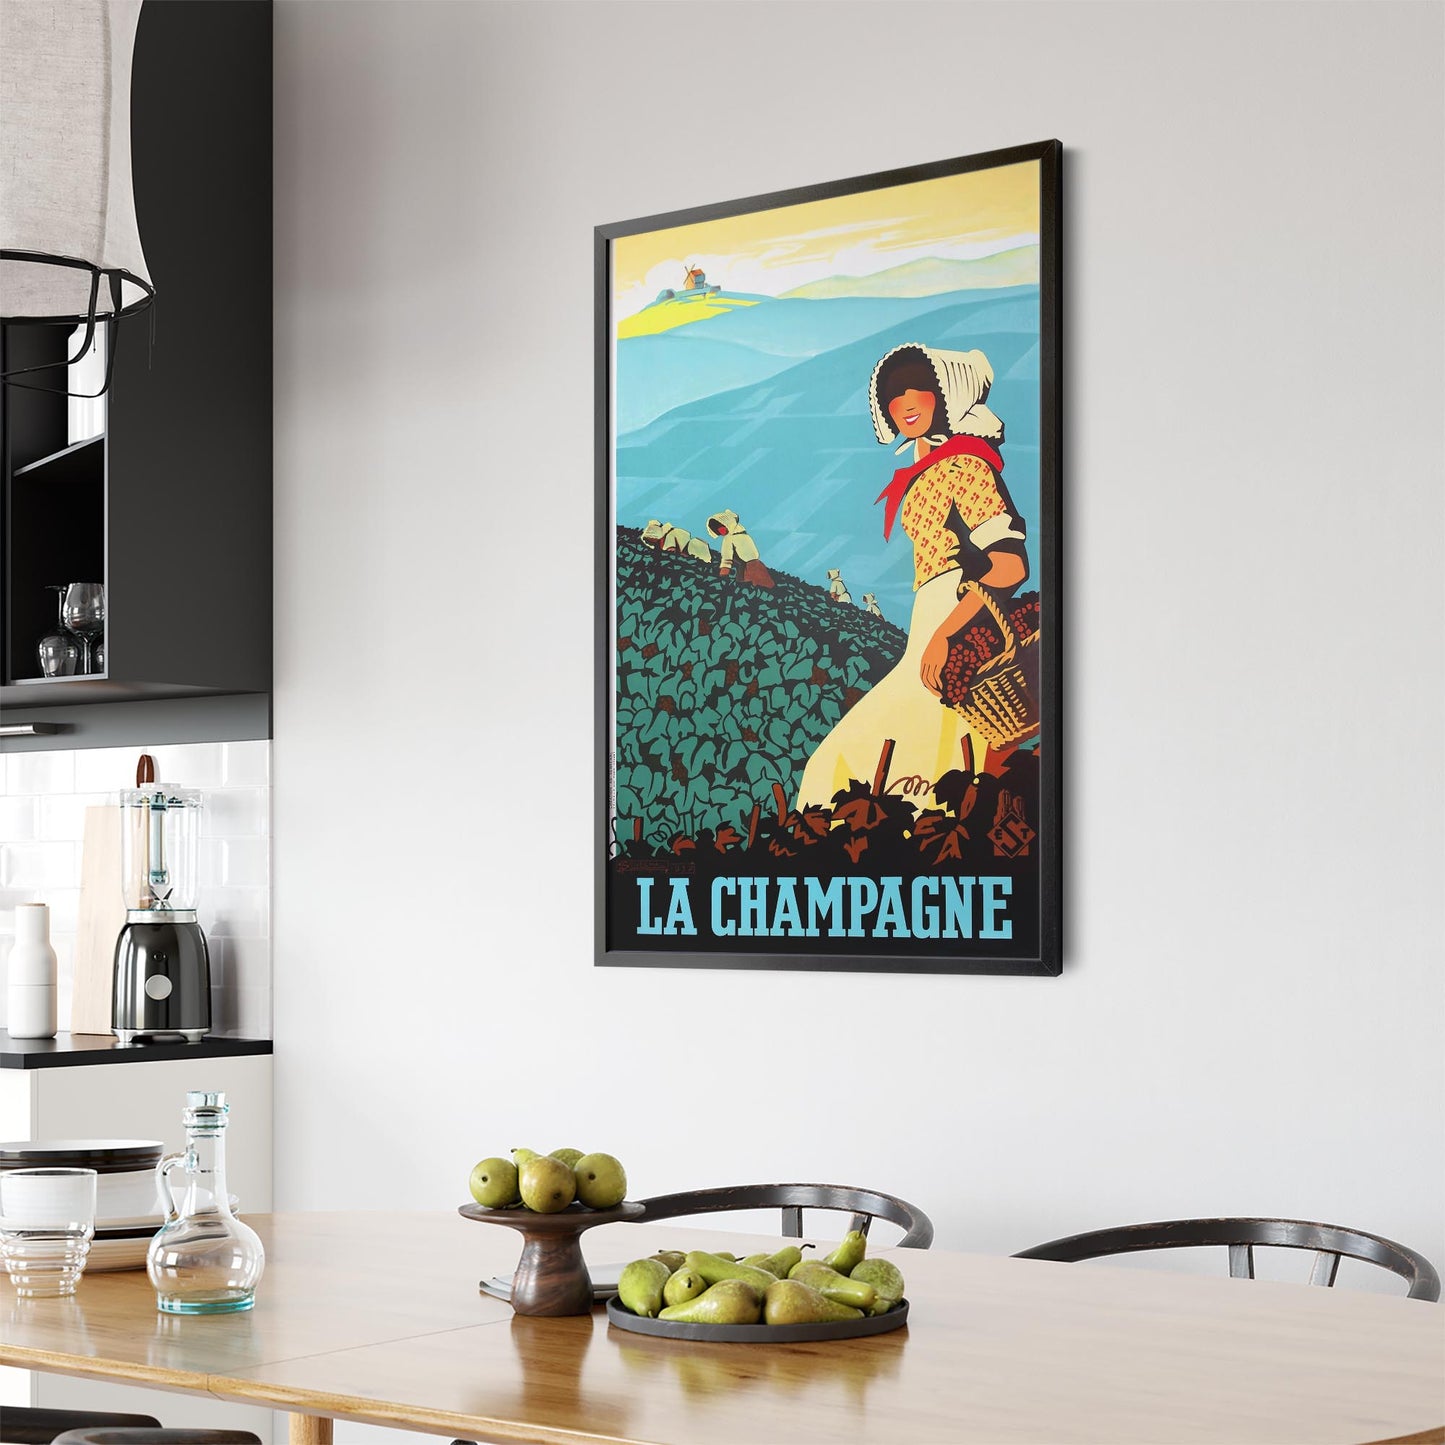 Champagne, France by Adrien Senechal | Framed Vintage Travel Poster